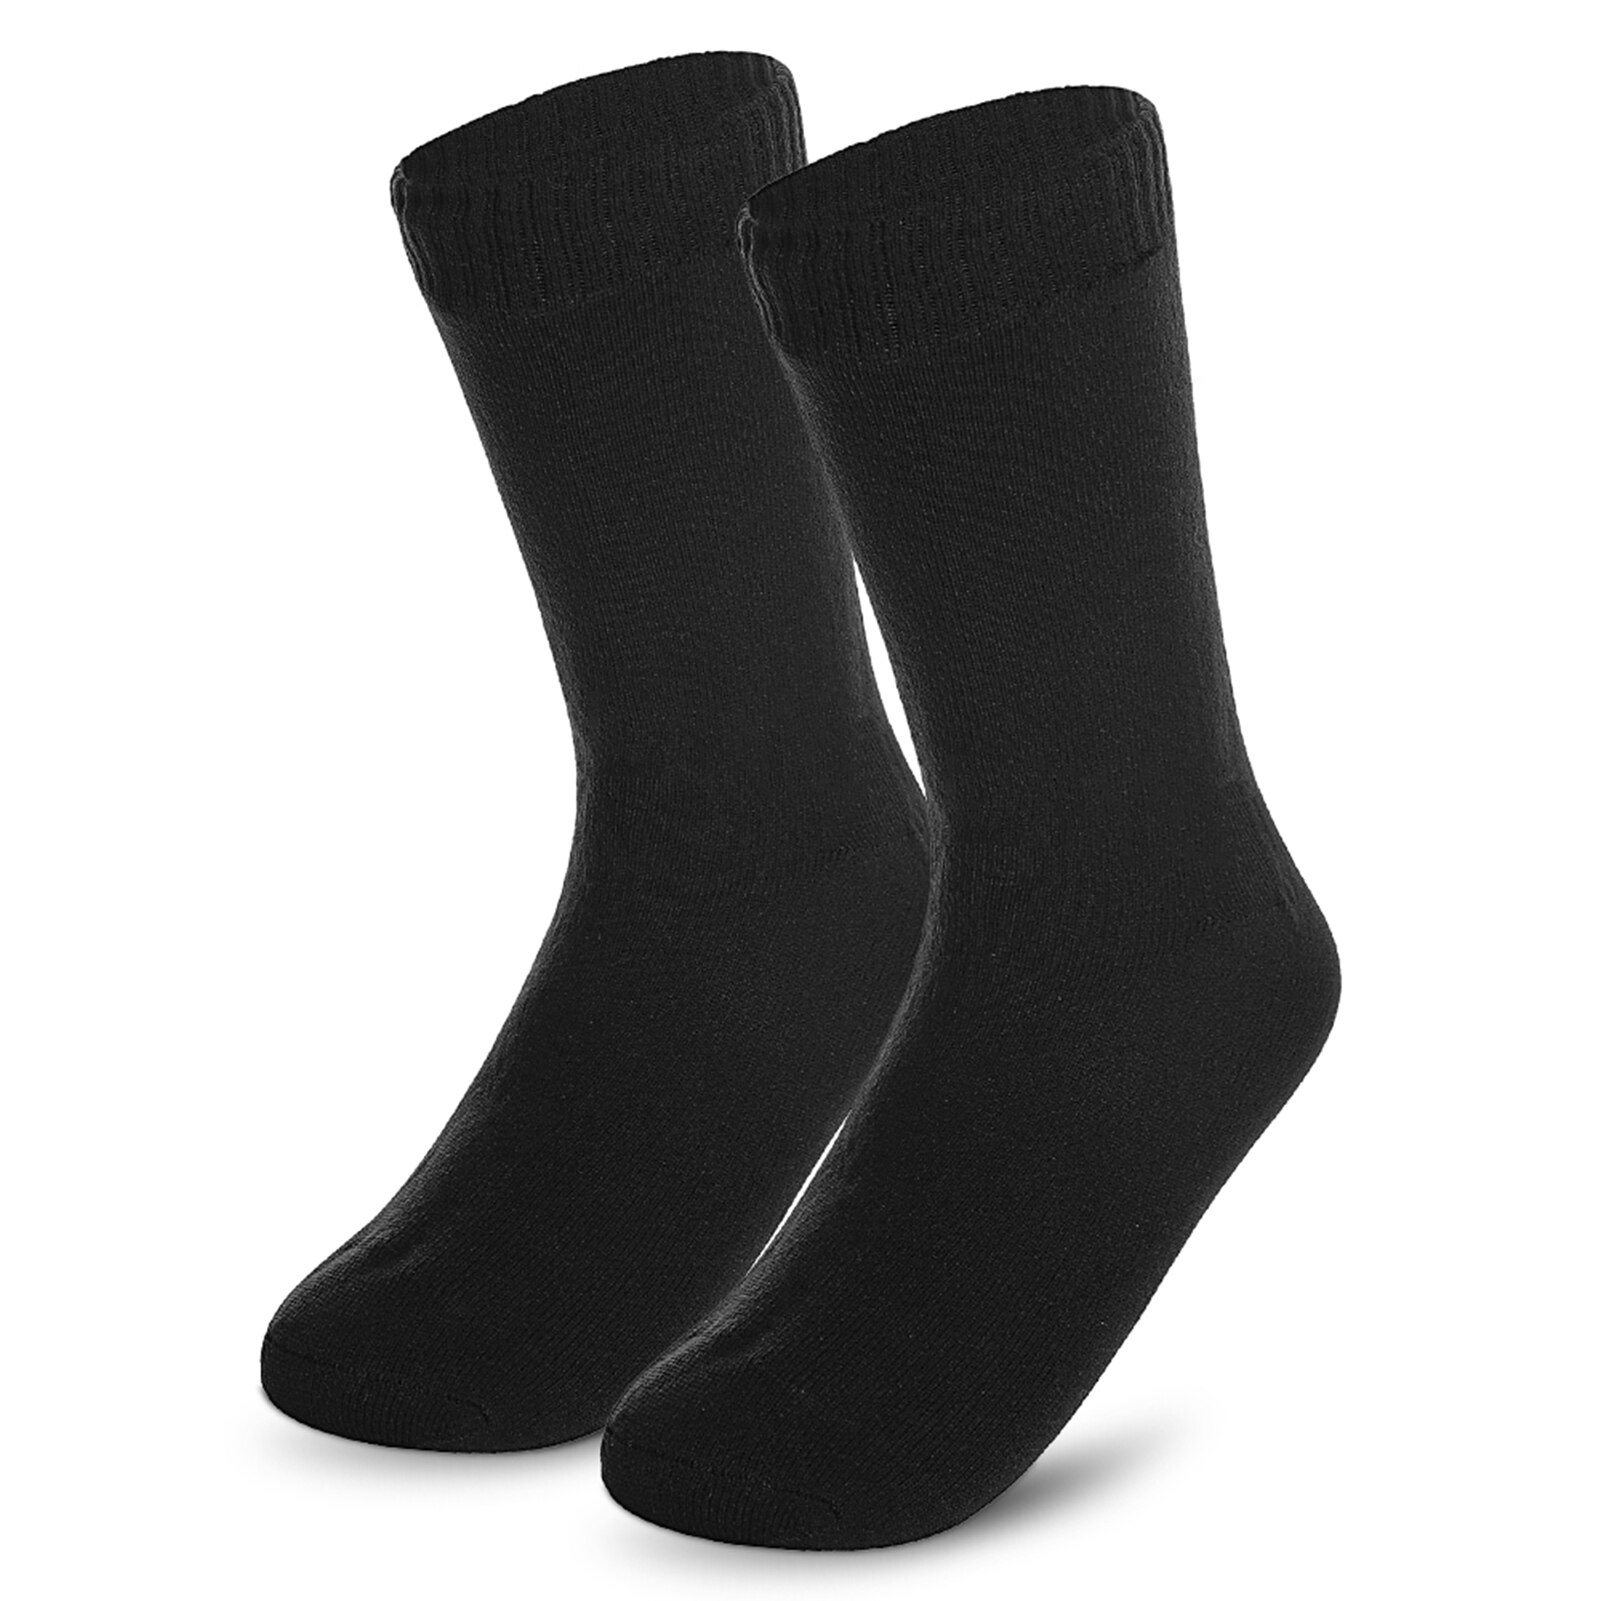 Mænds strømper udendørs sport vandtætte åndbare sokker til mænd kvinder udendørs sport vandring skiløb trekking sokker  fy005: Sort / L